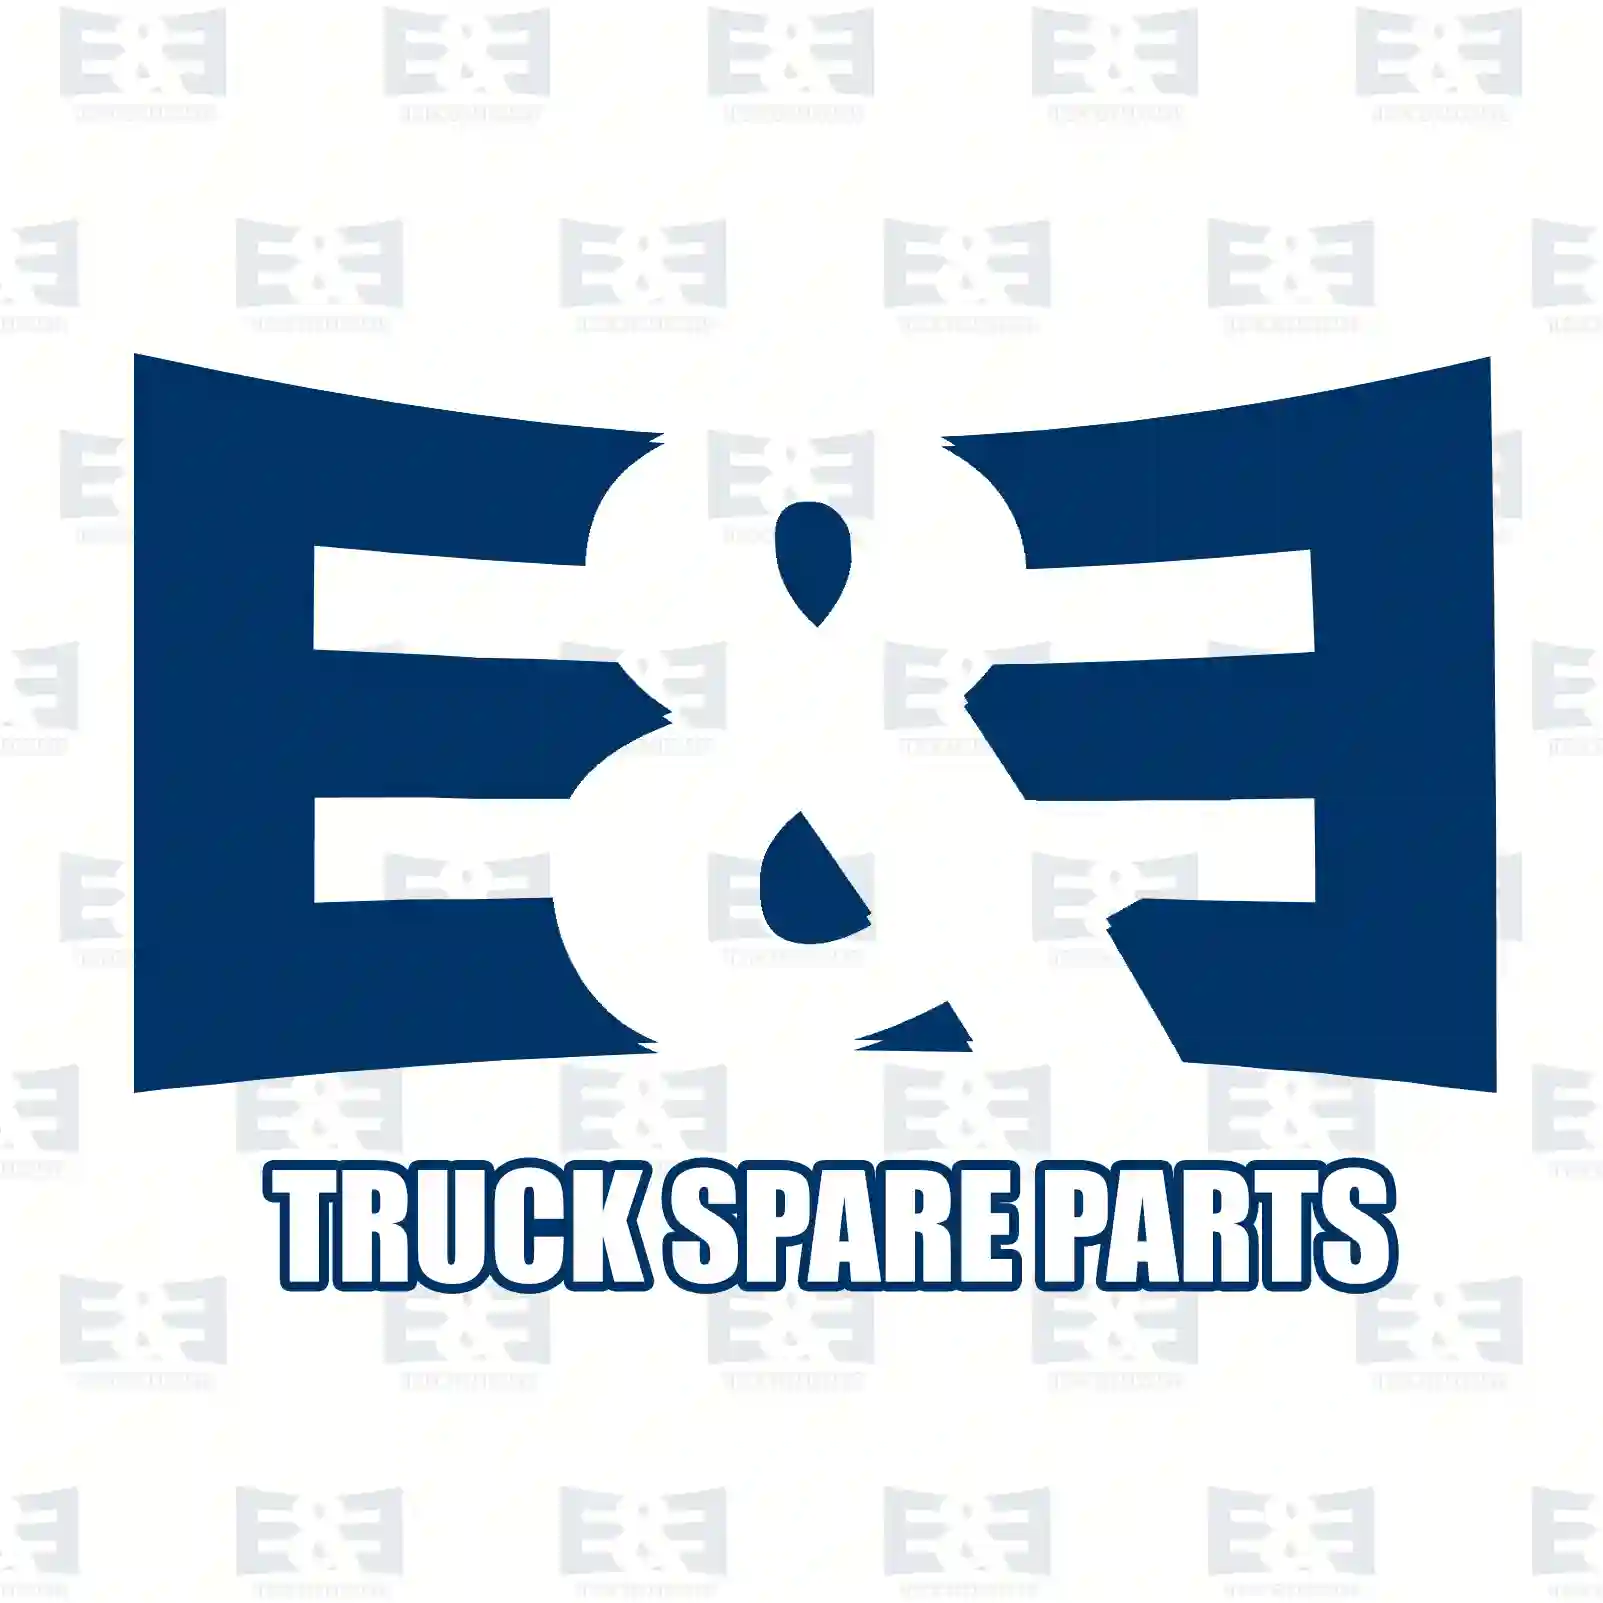 Step well case, right, 2E2292745, 81615100598, 81615100762, 81615101062 ||  2E2292745 E&E Truck Spare Parts | Truck Spare Parts, Auotomotive Spare Parts Step well case, right, 2E2292745, 81615100598, 81615100762, 81615101062 ||  2E2292745 E&E Truck Spare Parts | Truck Spare Parts, Auotomotive Spare Parts